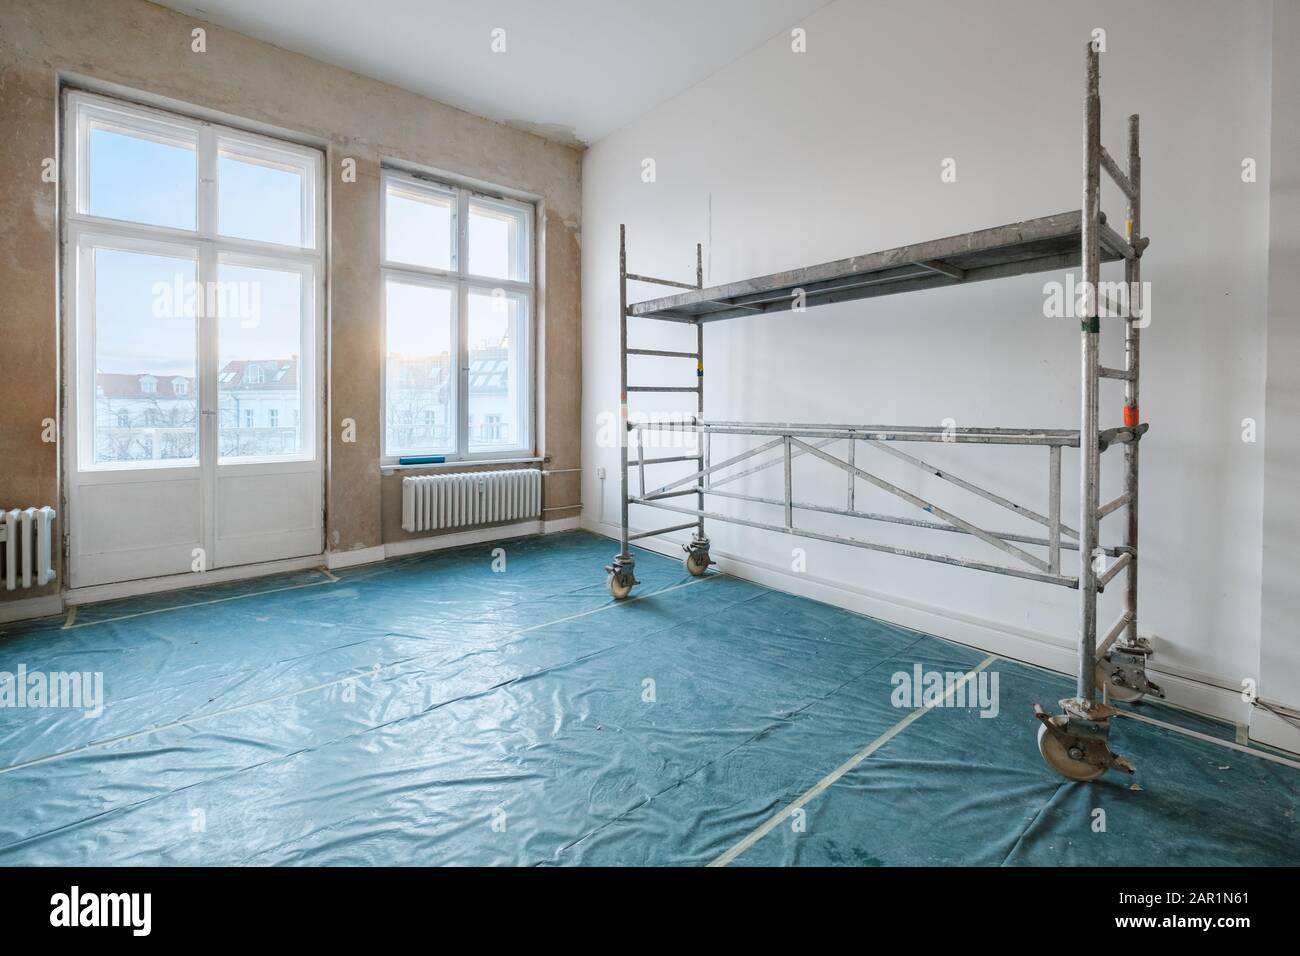 Raum bei Renovierung mit Gerüst - Hauskonzept sanieren Stockfoto